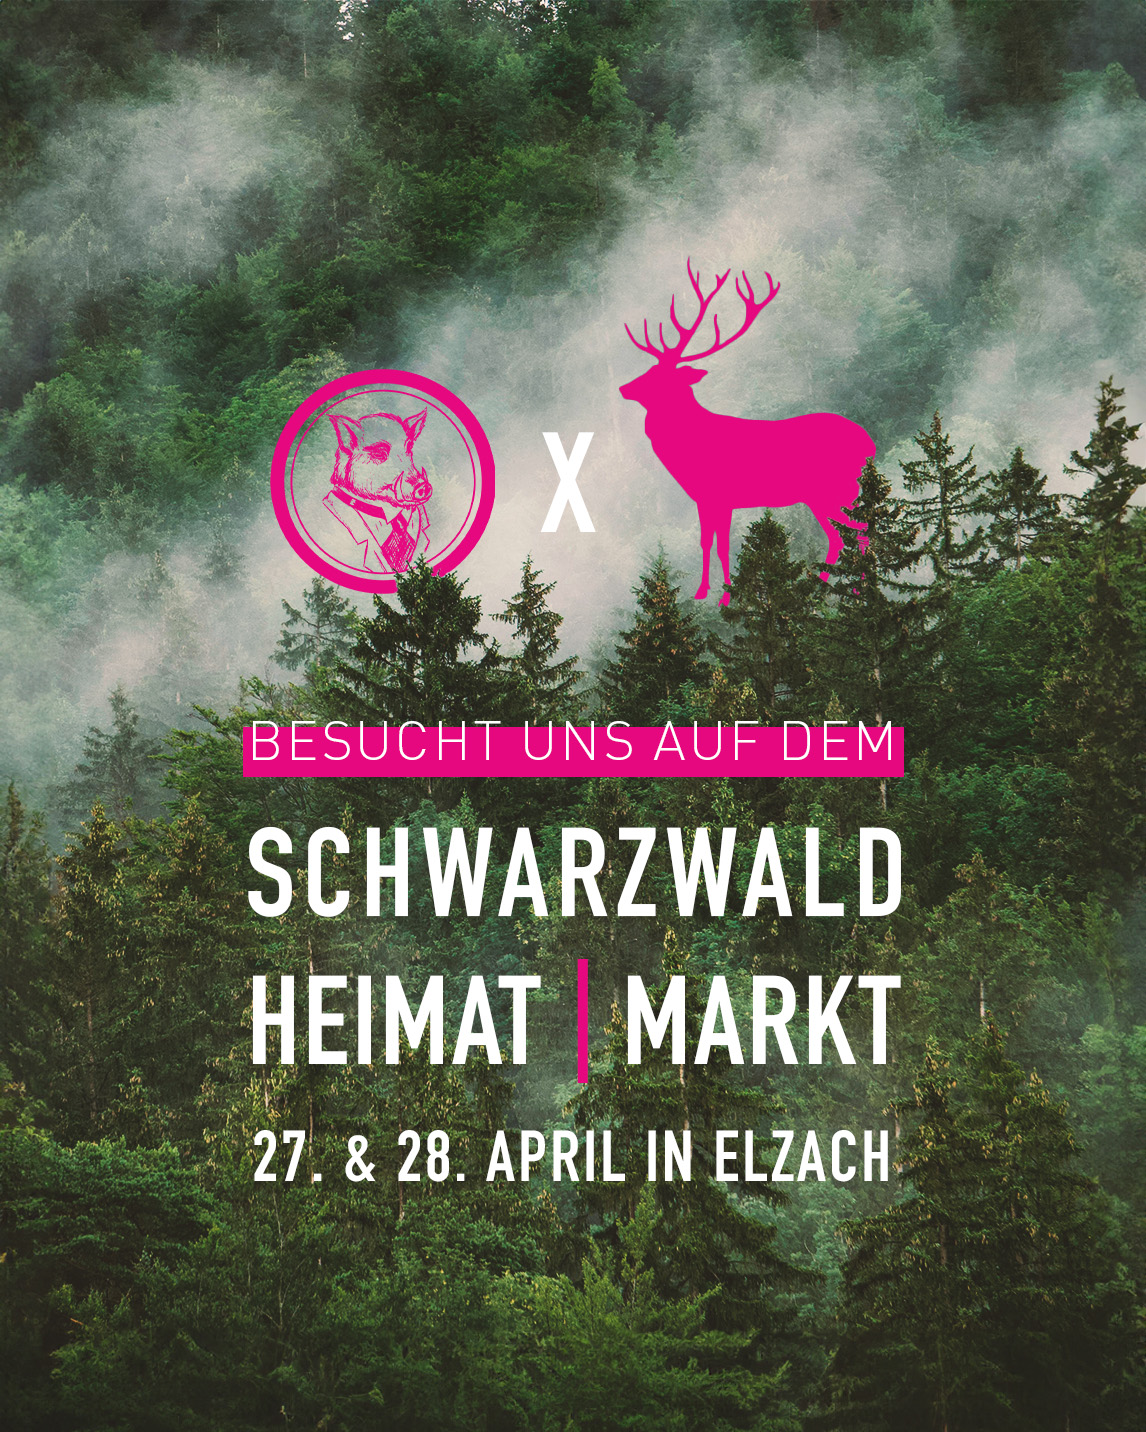 Schwarzwald Heimatmarkt in Elzach: Entdecke unsere sauguten Gin-Kreationen